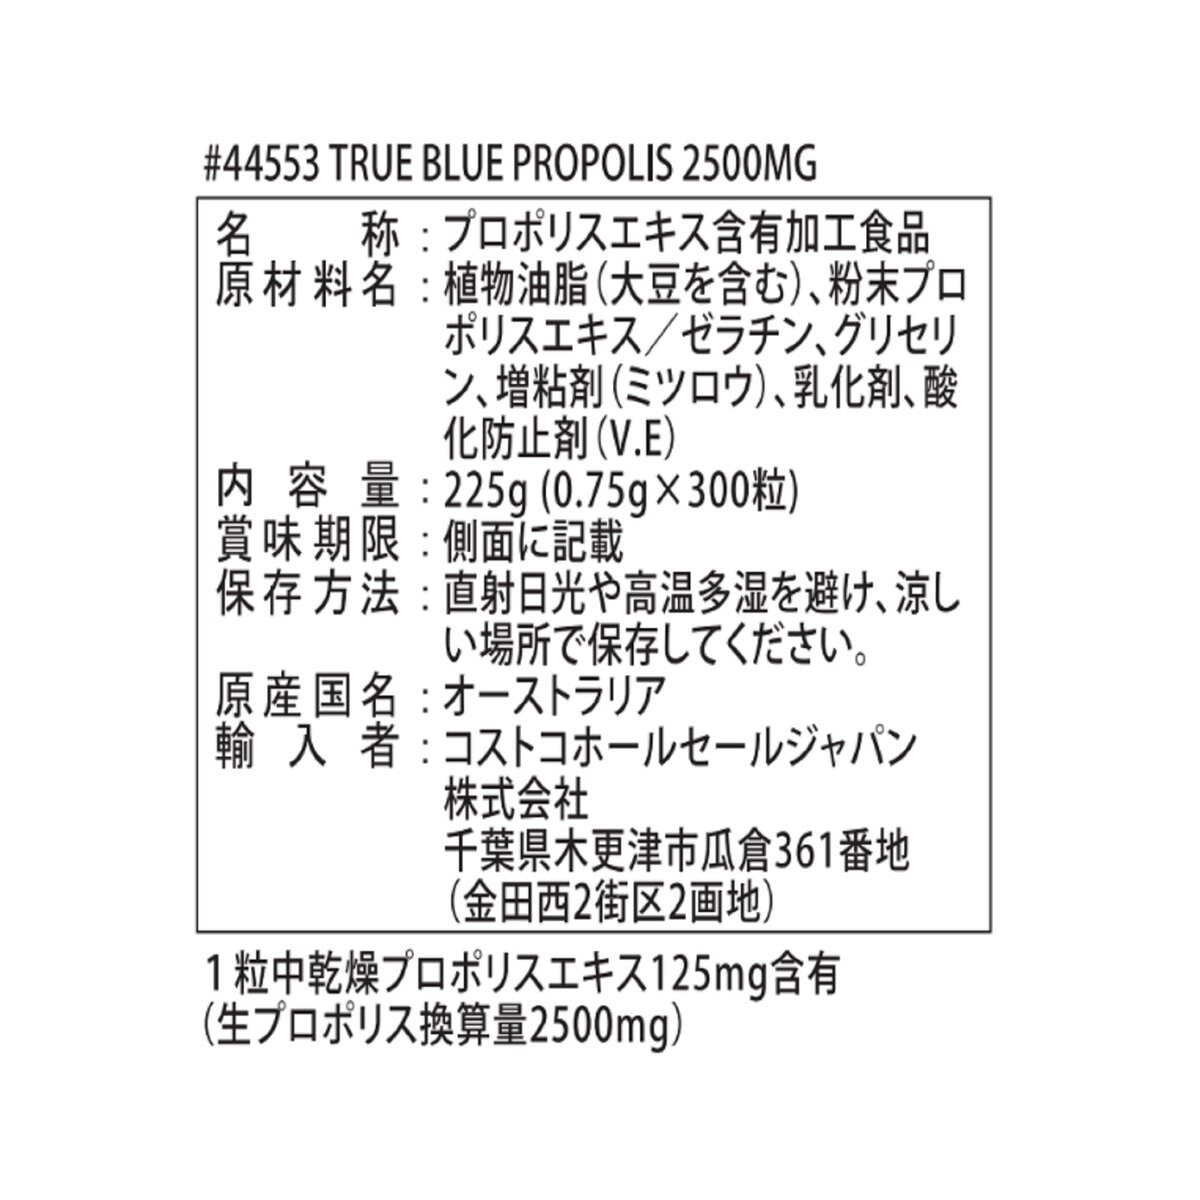 True Blue プロポリス 2500mg ソフトジェルカプセル 300粒 Costco Japan